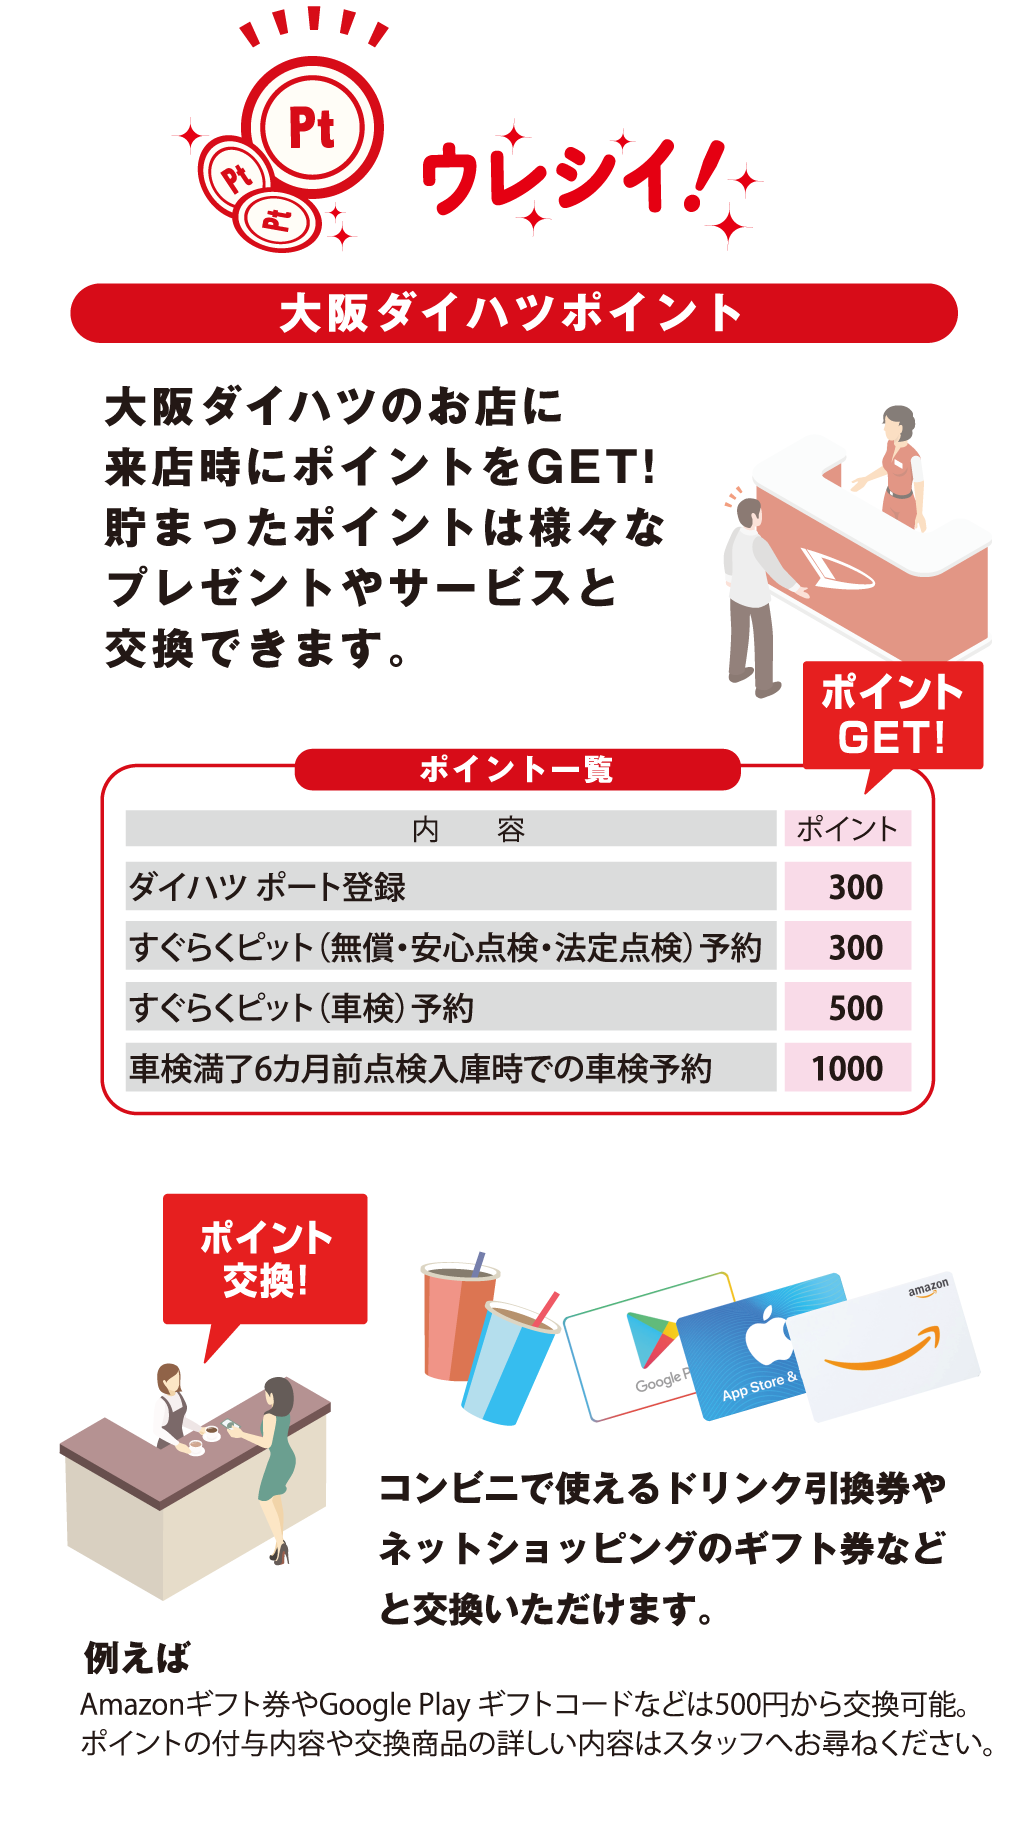 ウレシイ！ 大阪ダイハツポイント 大阪ダイハツのお店に来店時にポイントをGET!貯まったポイントは様々なプレゼントやサービスと交換できます。